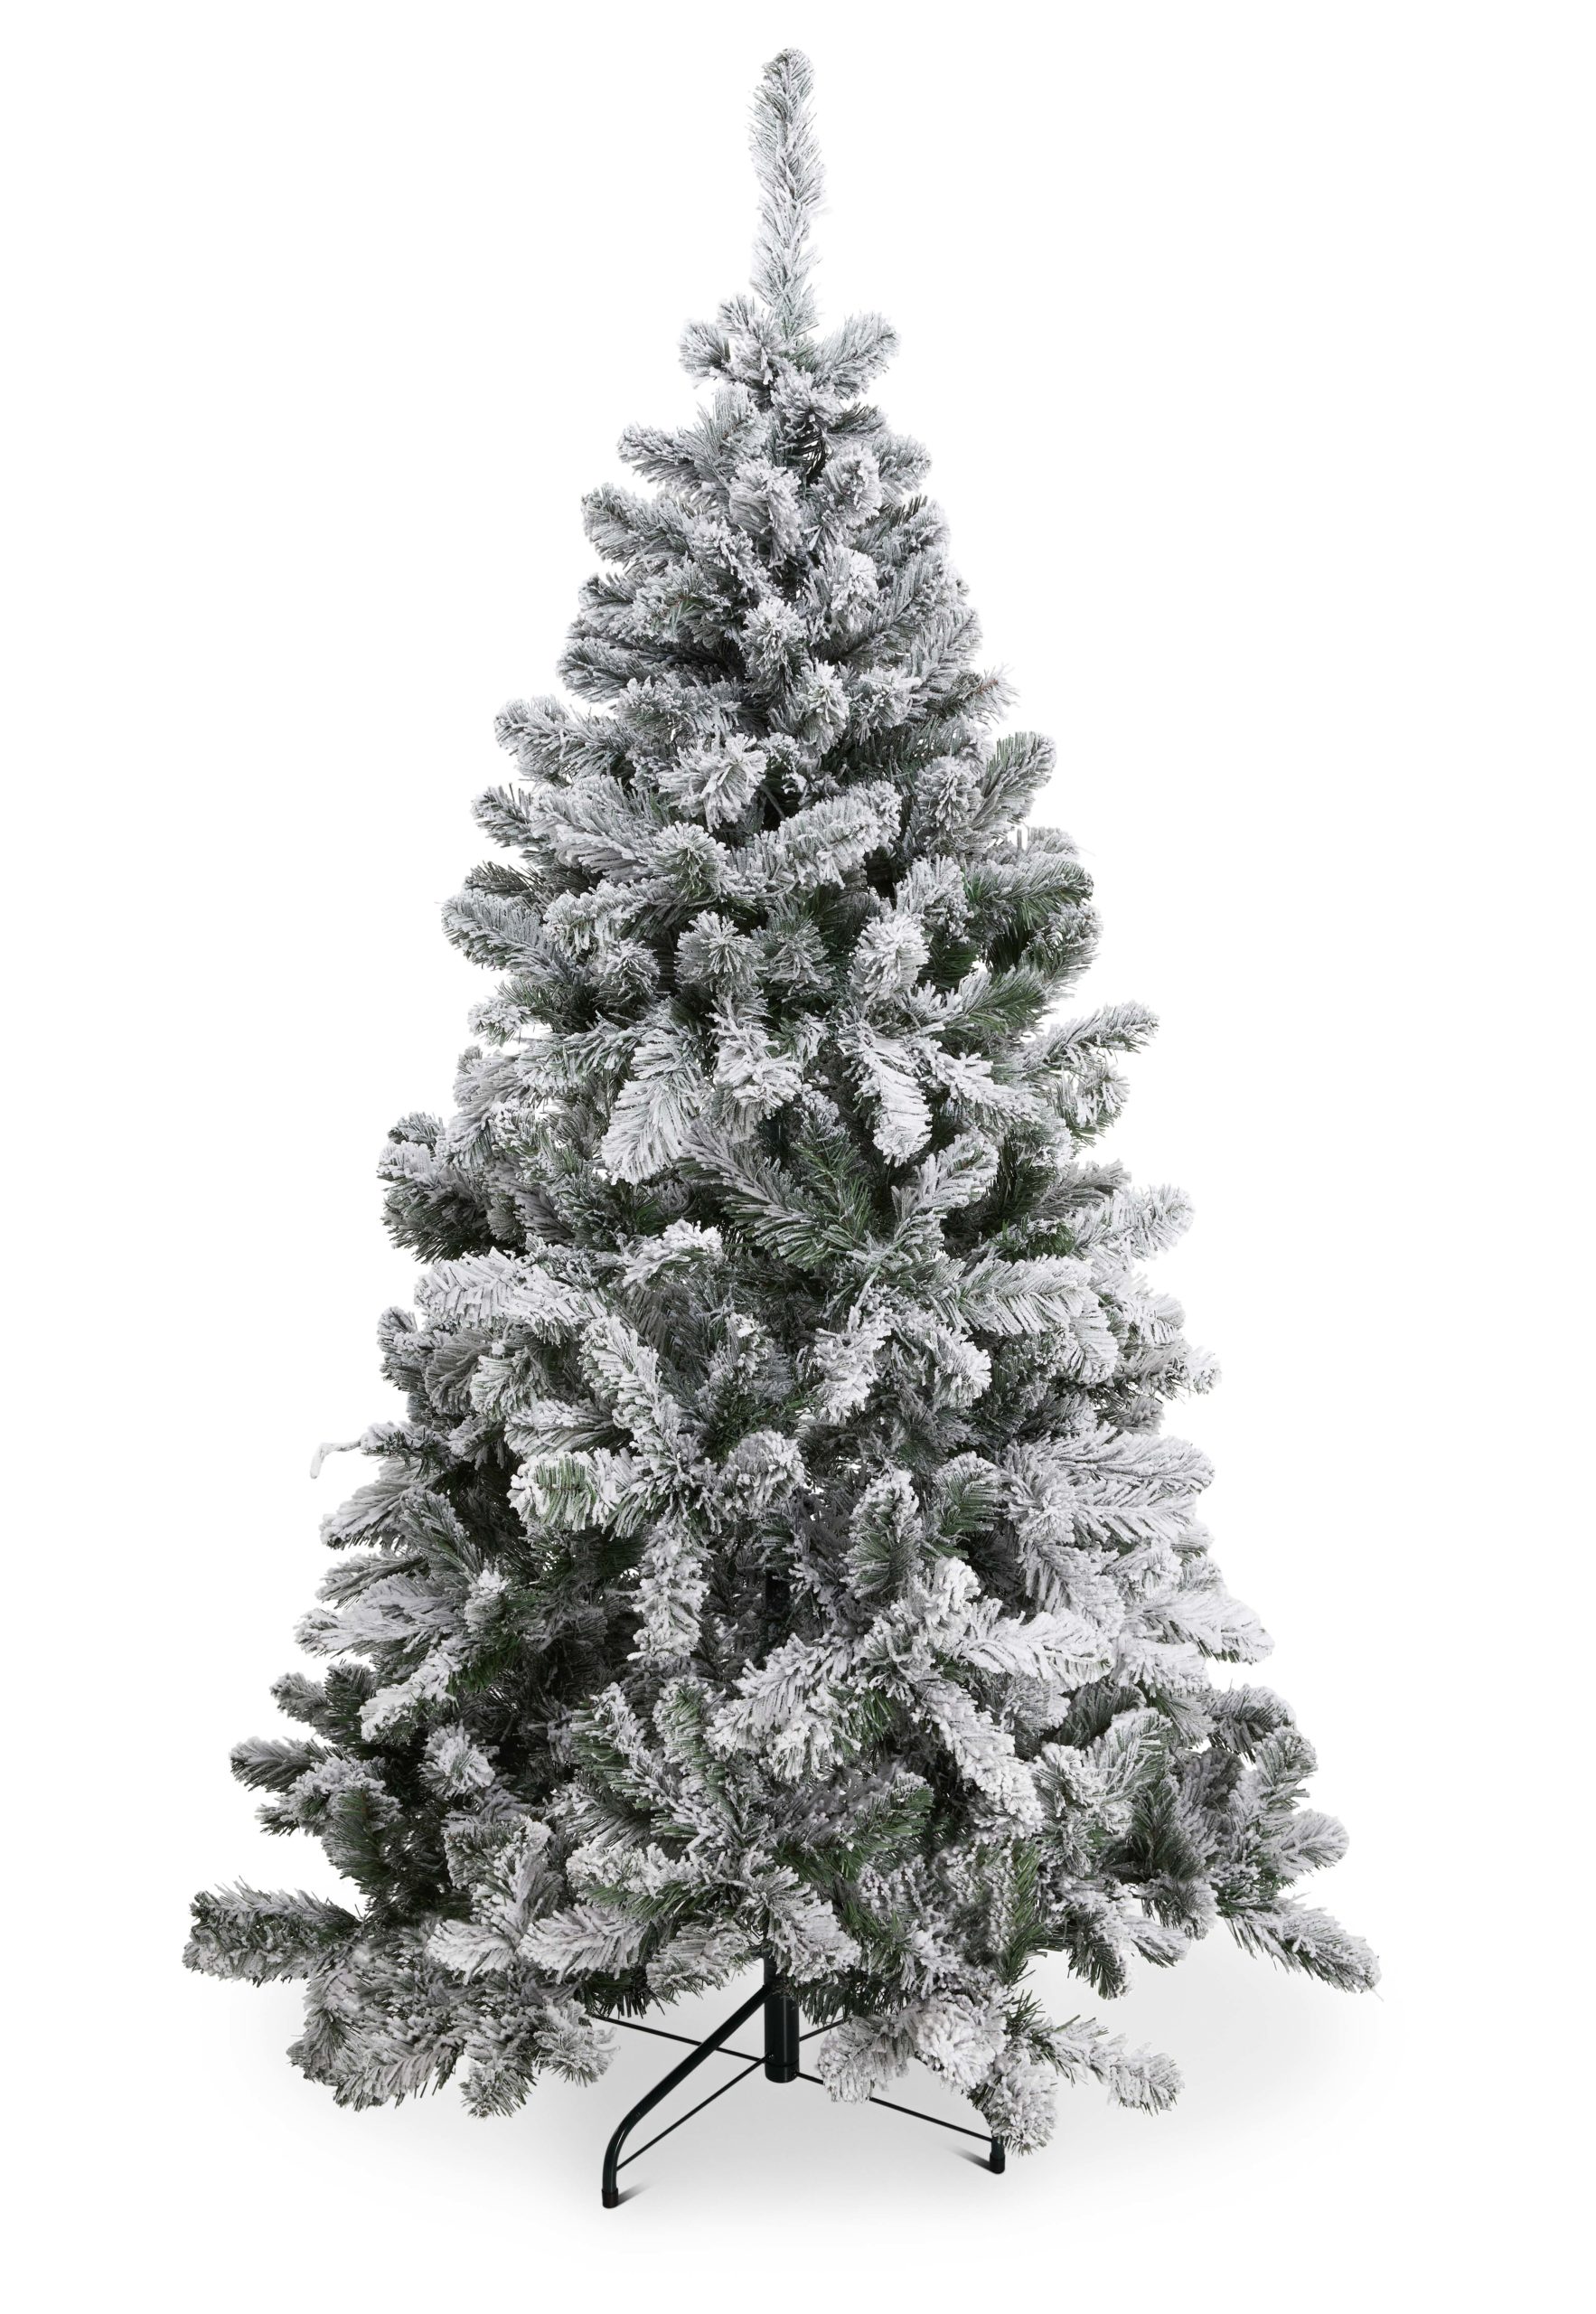 goedkoop fluweel Productie Gekleurde kerstboom of besneeuwde kerstboom kopen?